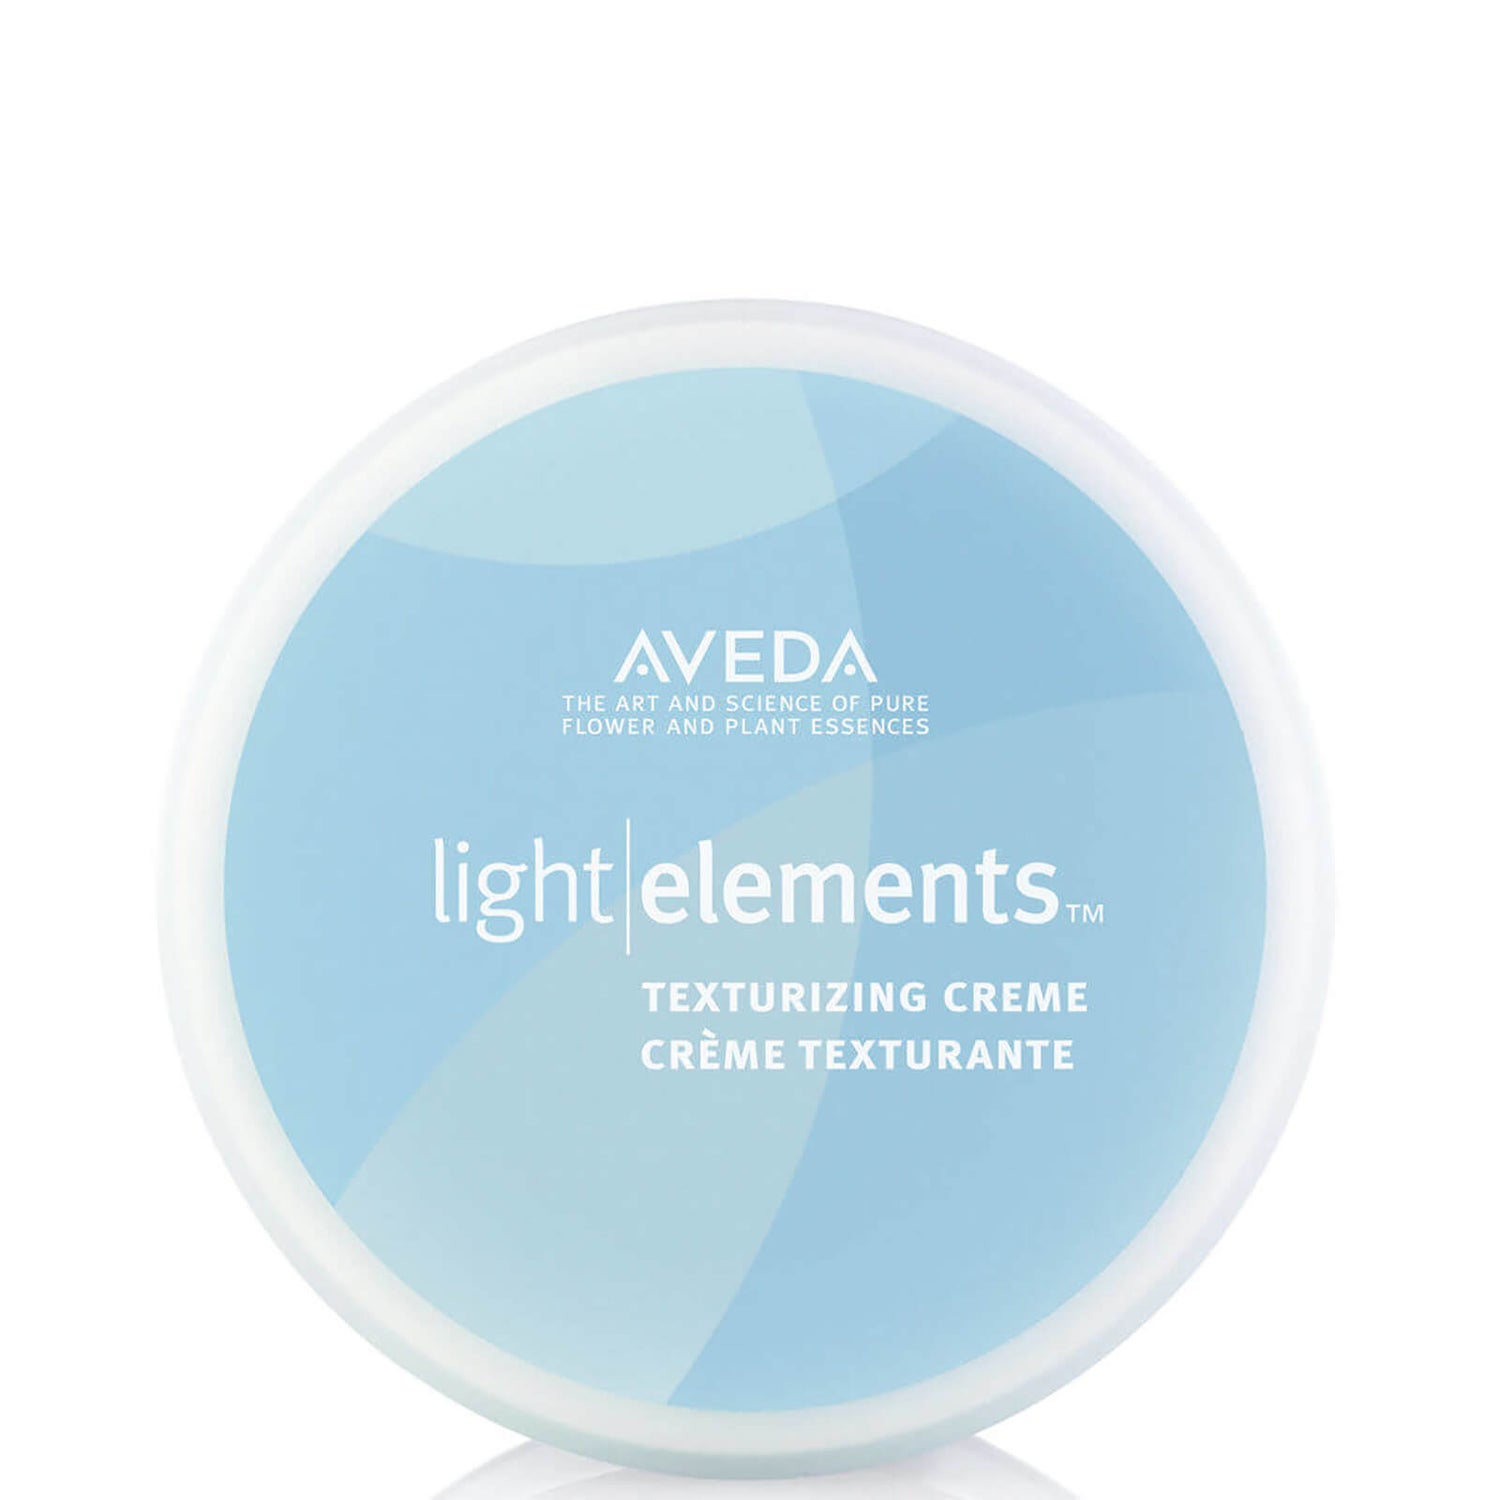 Creme de Texturização Light Elements da Aveda (75 ml)